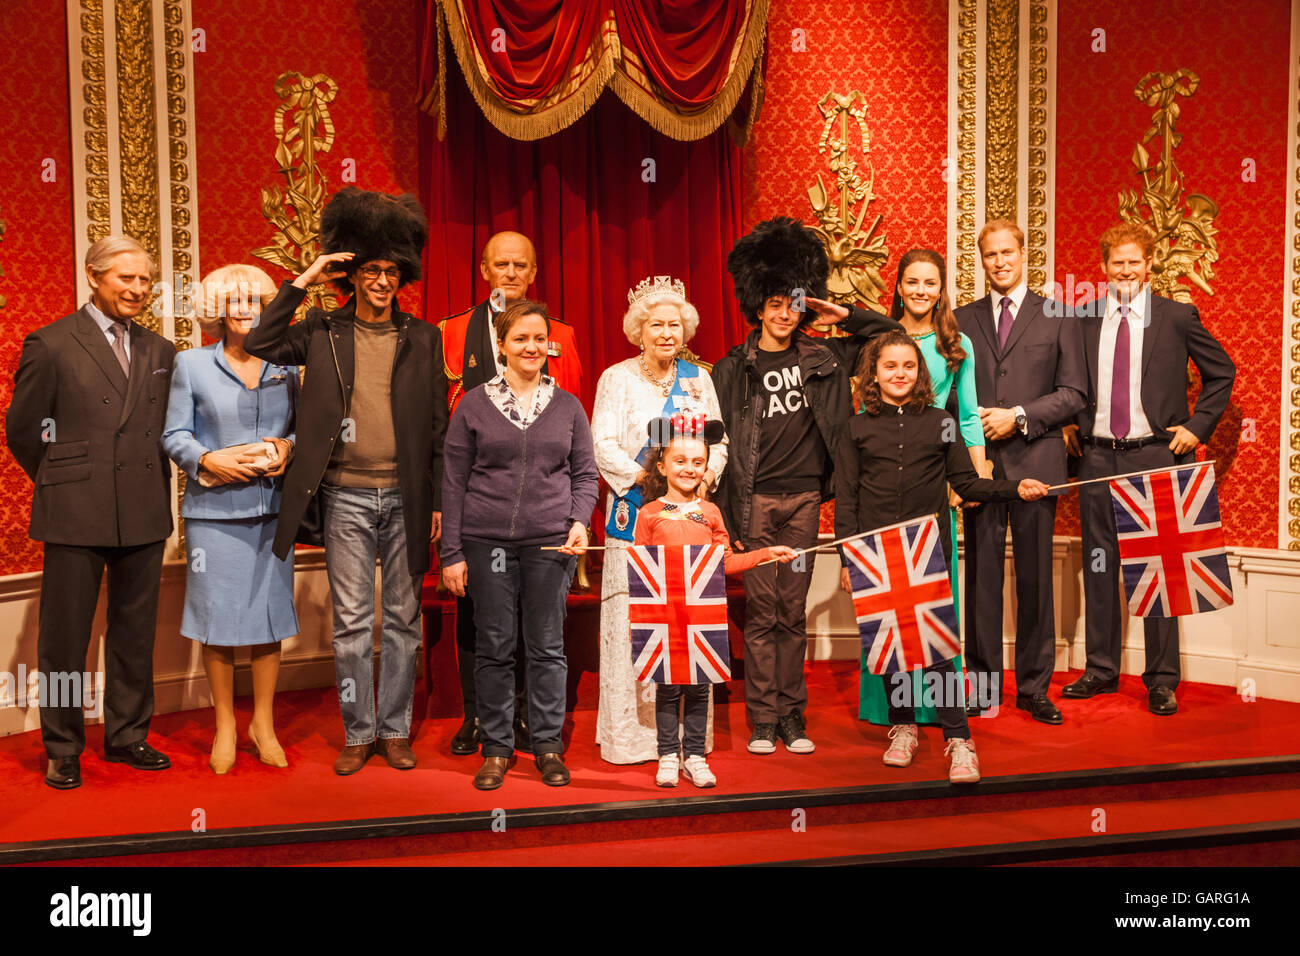 L'Angleterre, Londres, Madame Tussauds, touristes posant avec figures de cire de la Reine et la Famille royale Banque D'Images